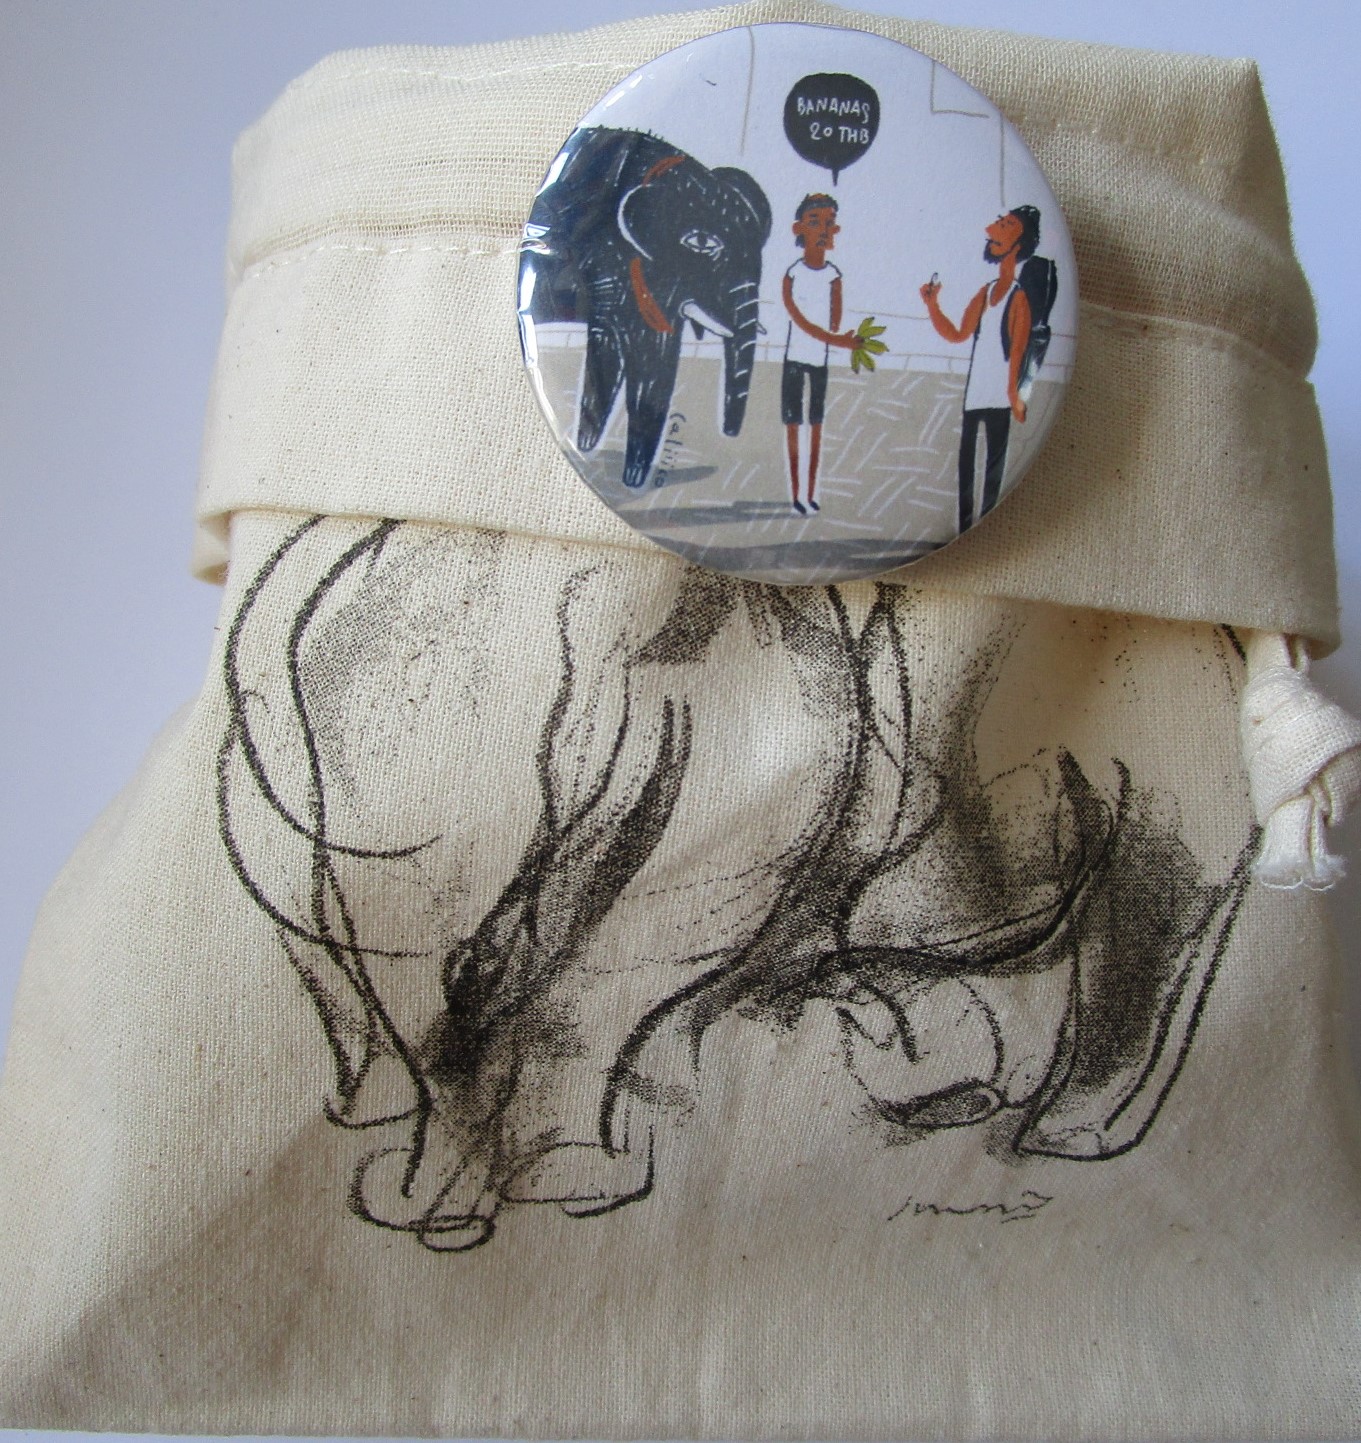 Small Cloth Bag, ถุงผ้าลายช้างไทย ช้างคู่ พร้อมเข็มกลัดสุดชิค ใส่ของอเนกประสงค์ พร้อมเชือก รูดเก็บ พกพาสะดวก